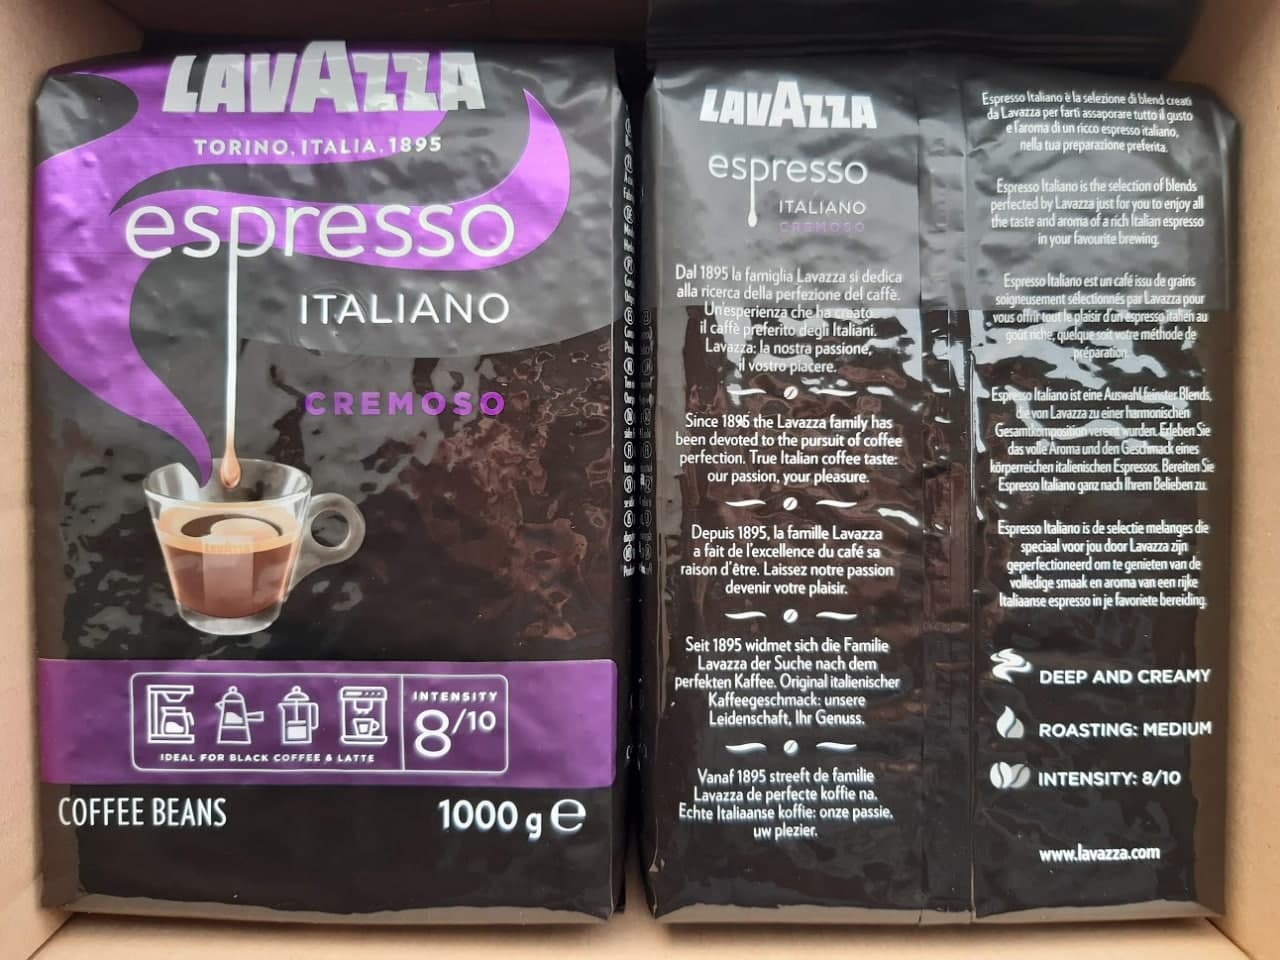 Kohvioad "LAVAZZA" Espresso Italiano Cremoso